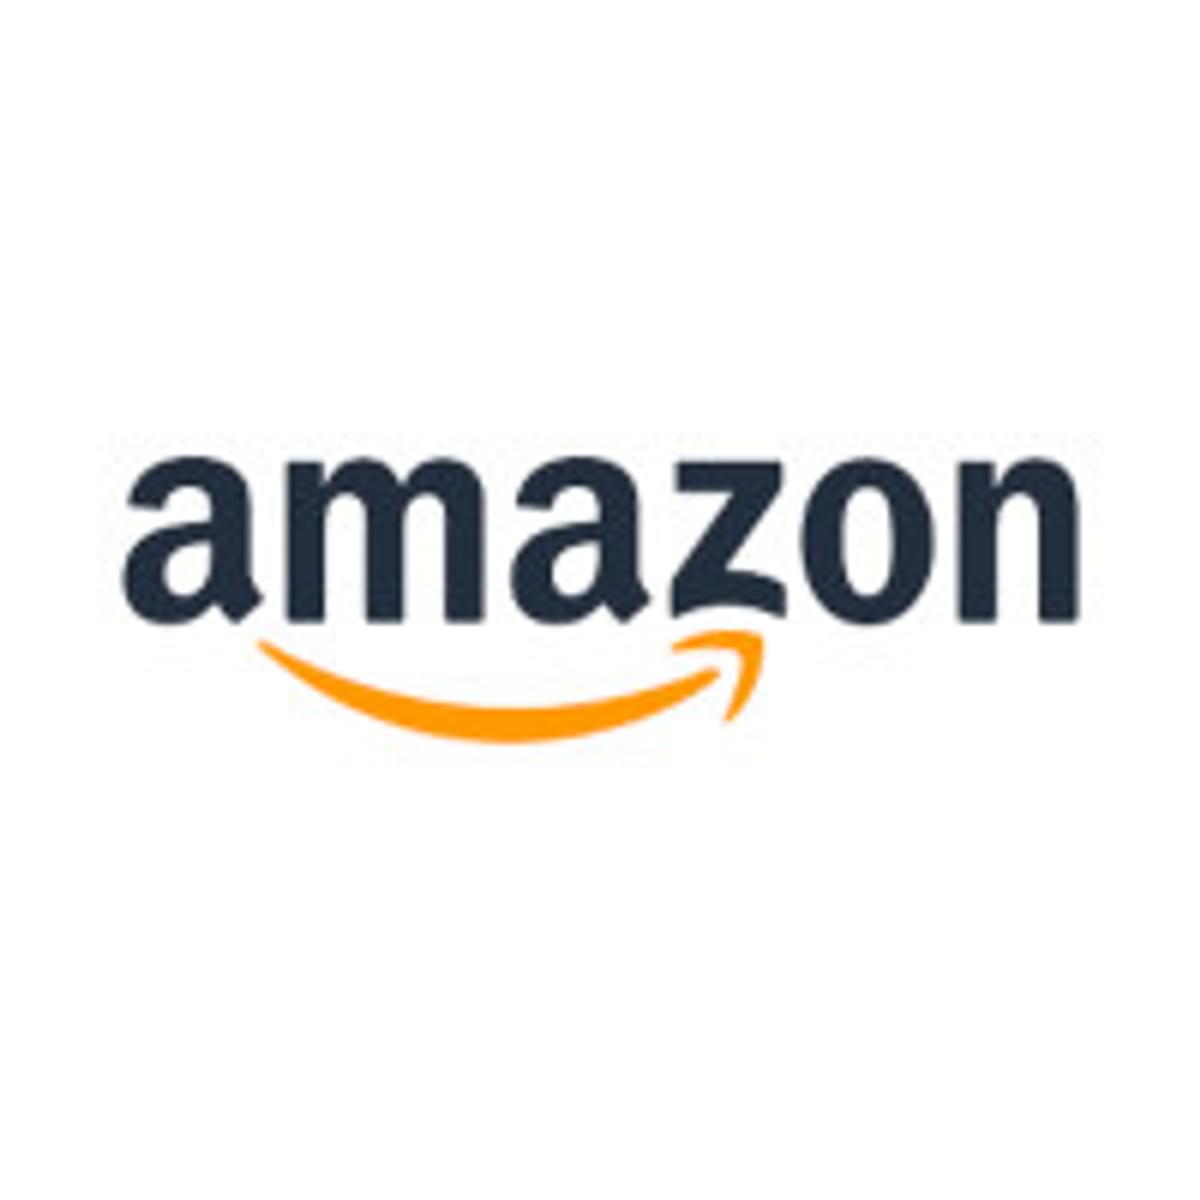 Amazon stelt terugkeer naar kantoor uit image